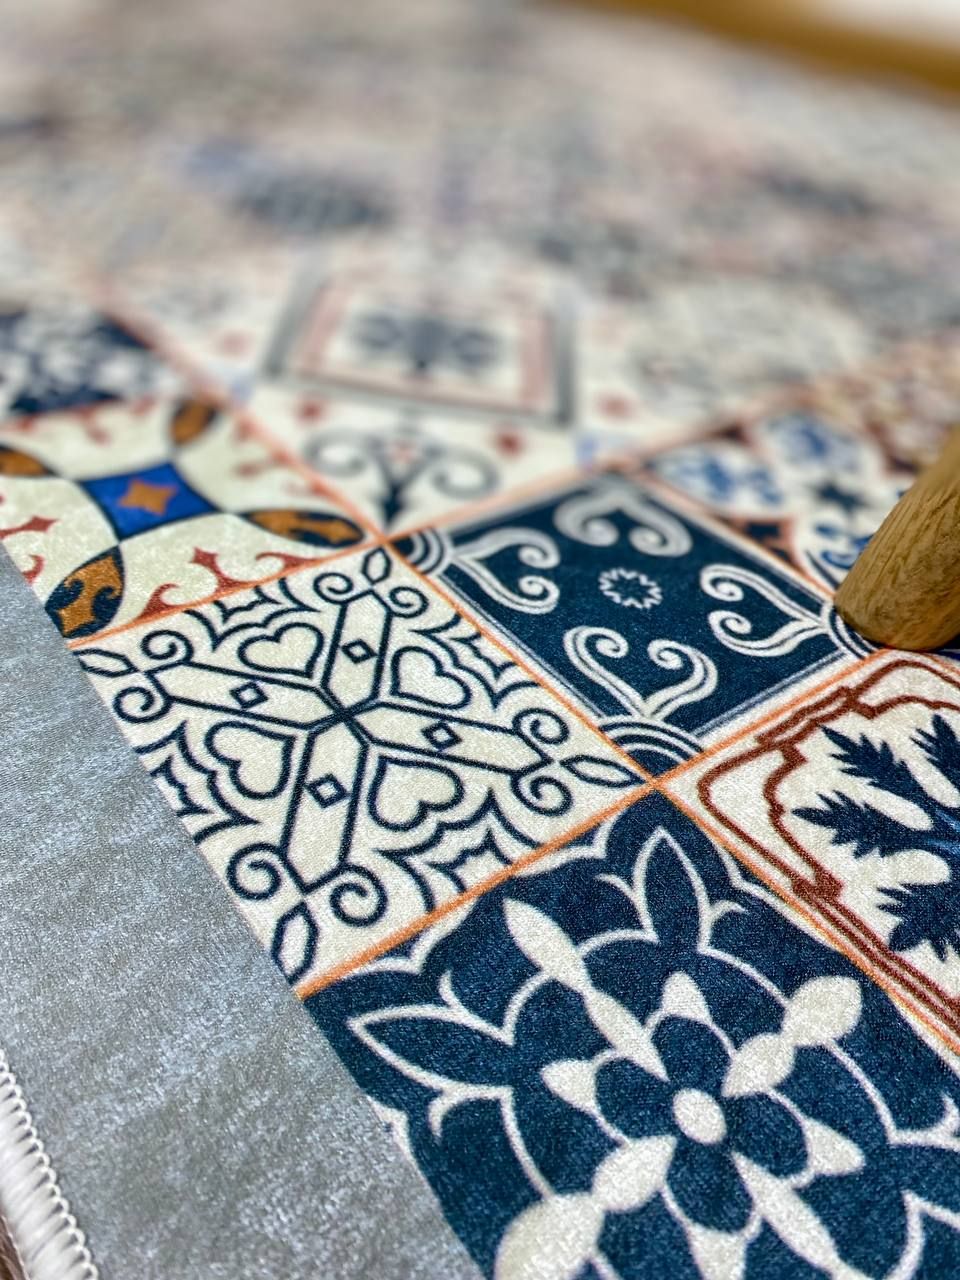 Турецький безворсовий килим "Турецька Мозаїка" на підкладці з еко-шкіри